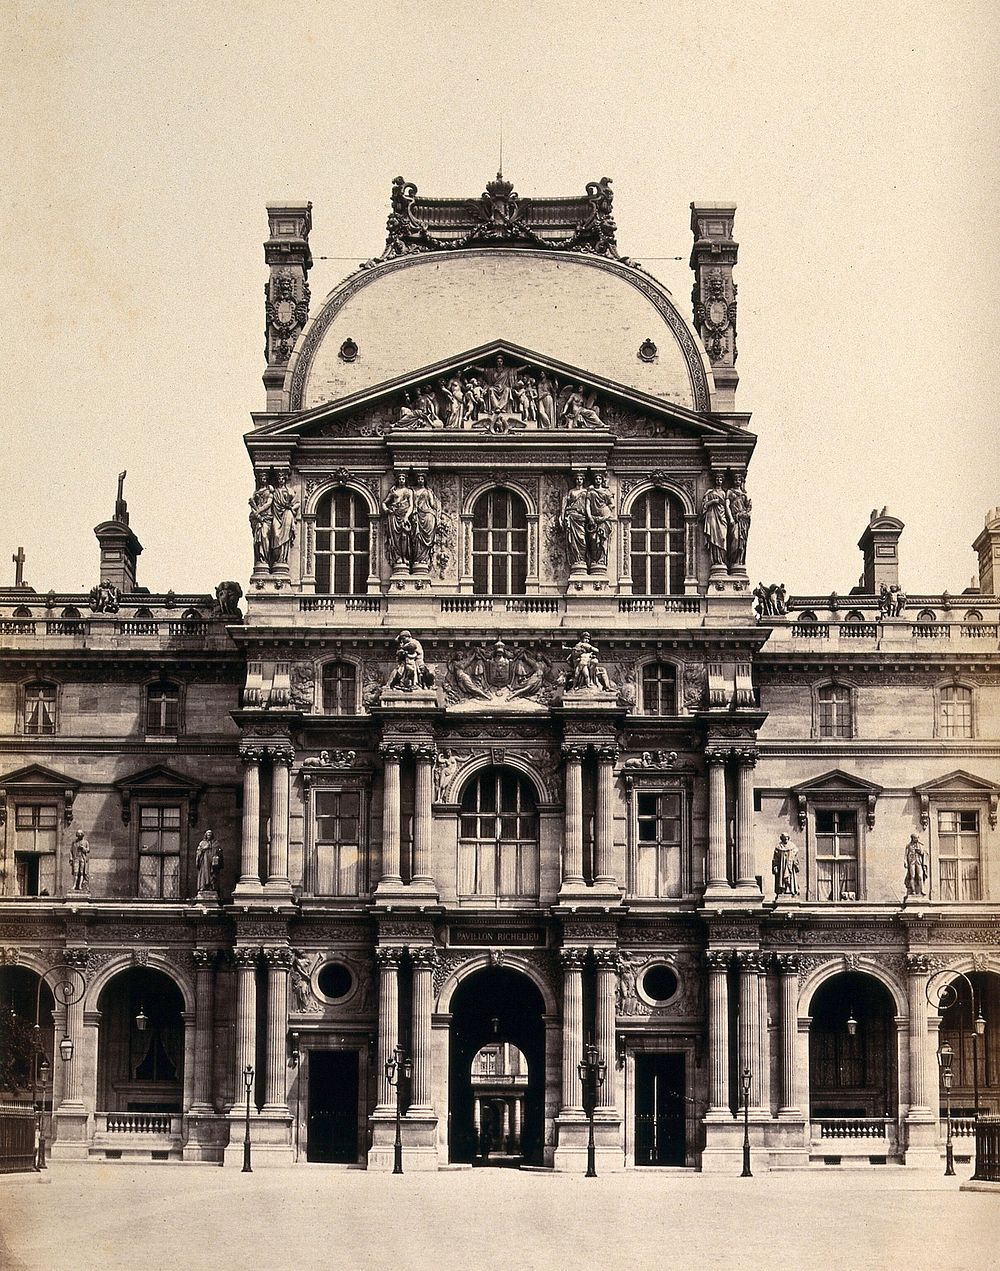 Pavillon Richelieu, the Louvre, Paris, France. Photograph by Achille Quinet, ca. 1860.